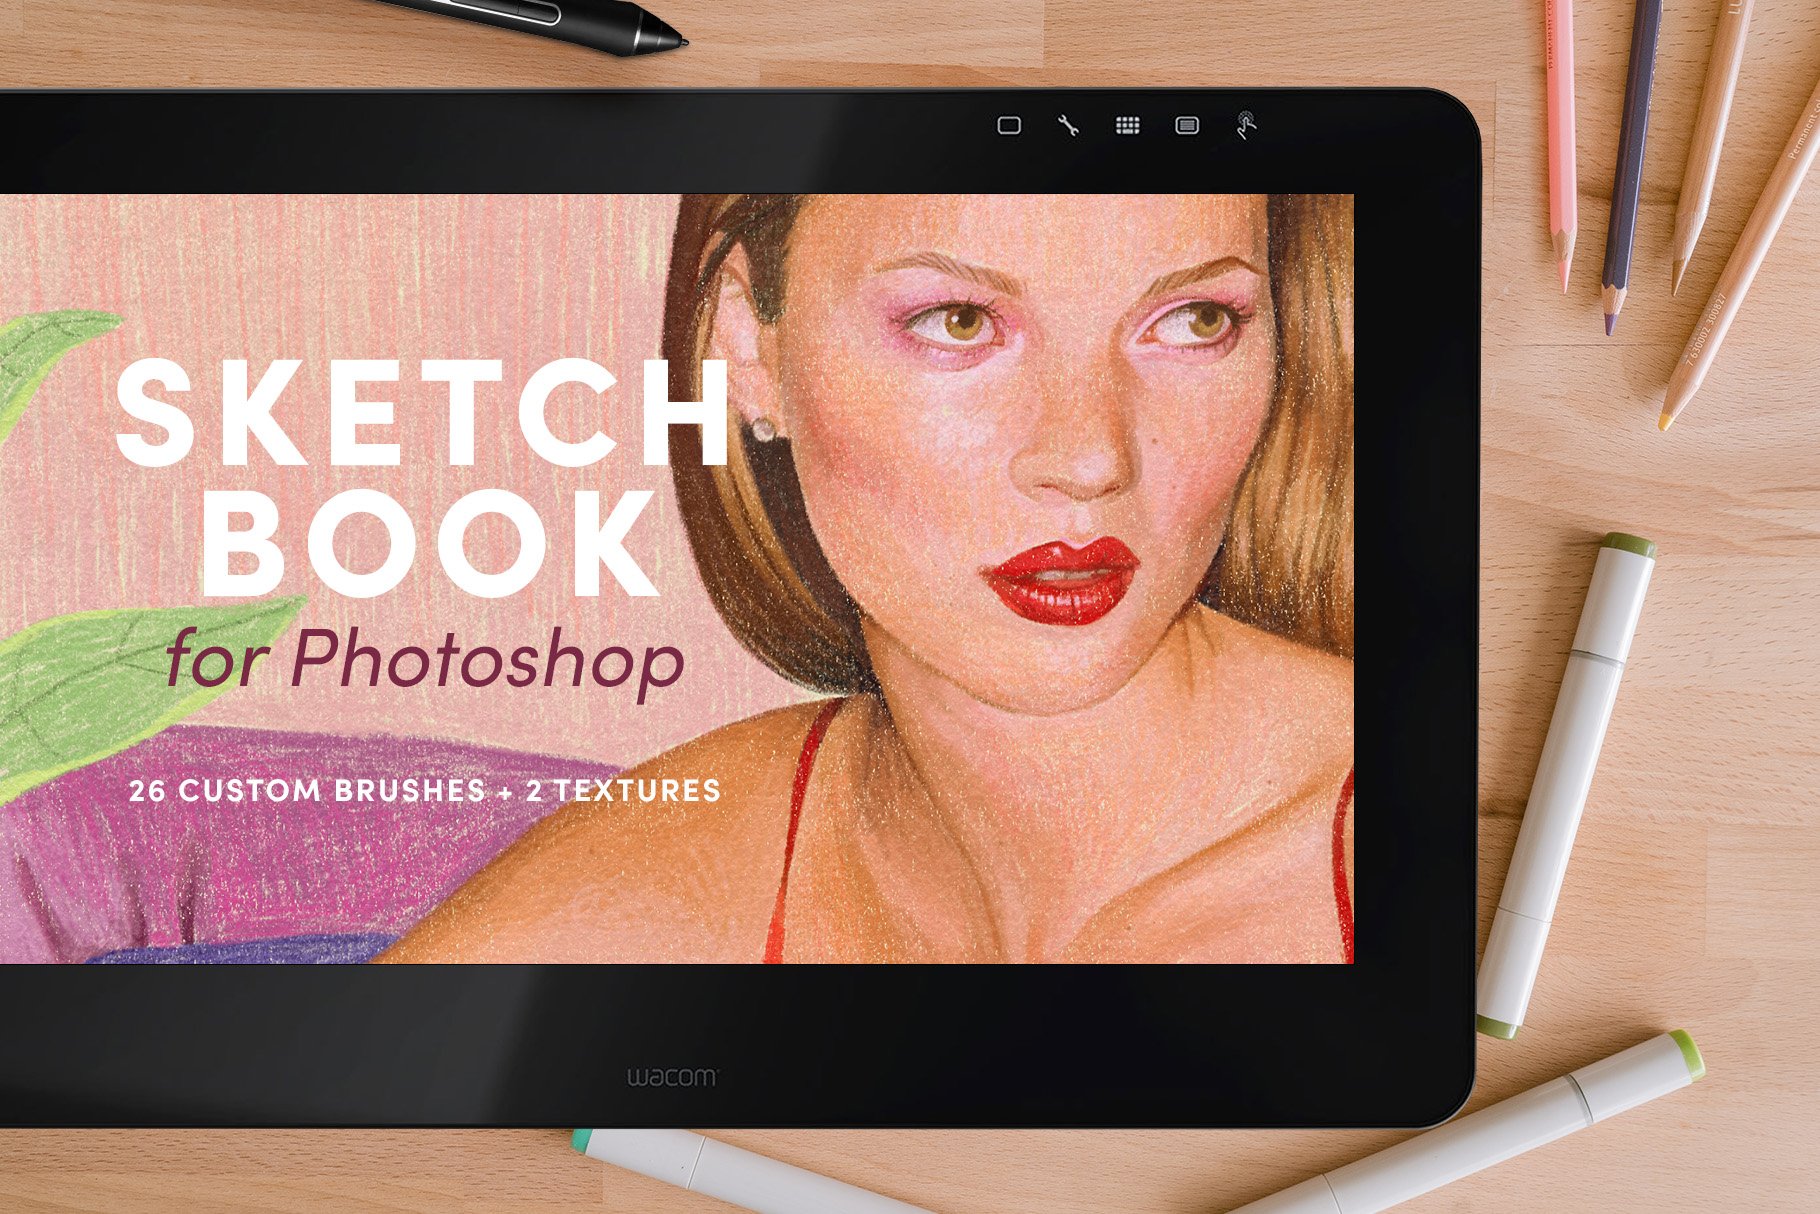 Sketchbook Set – Photoshop Brushescover image.